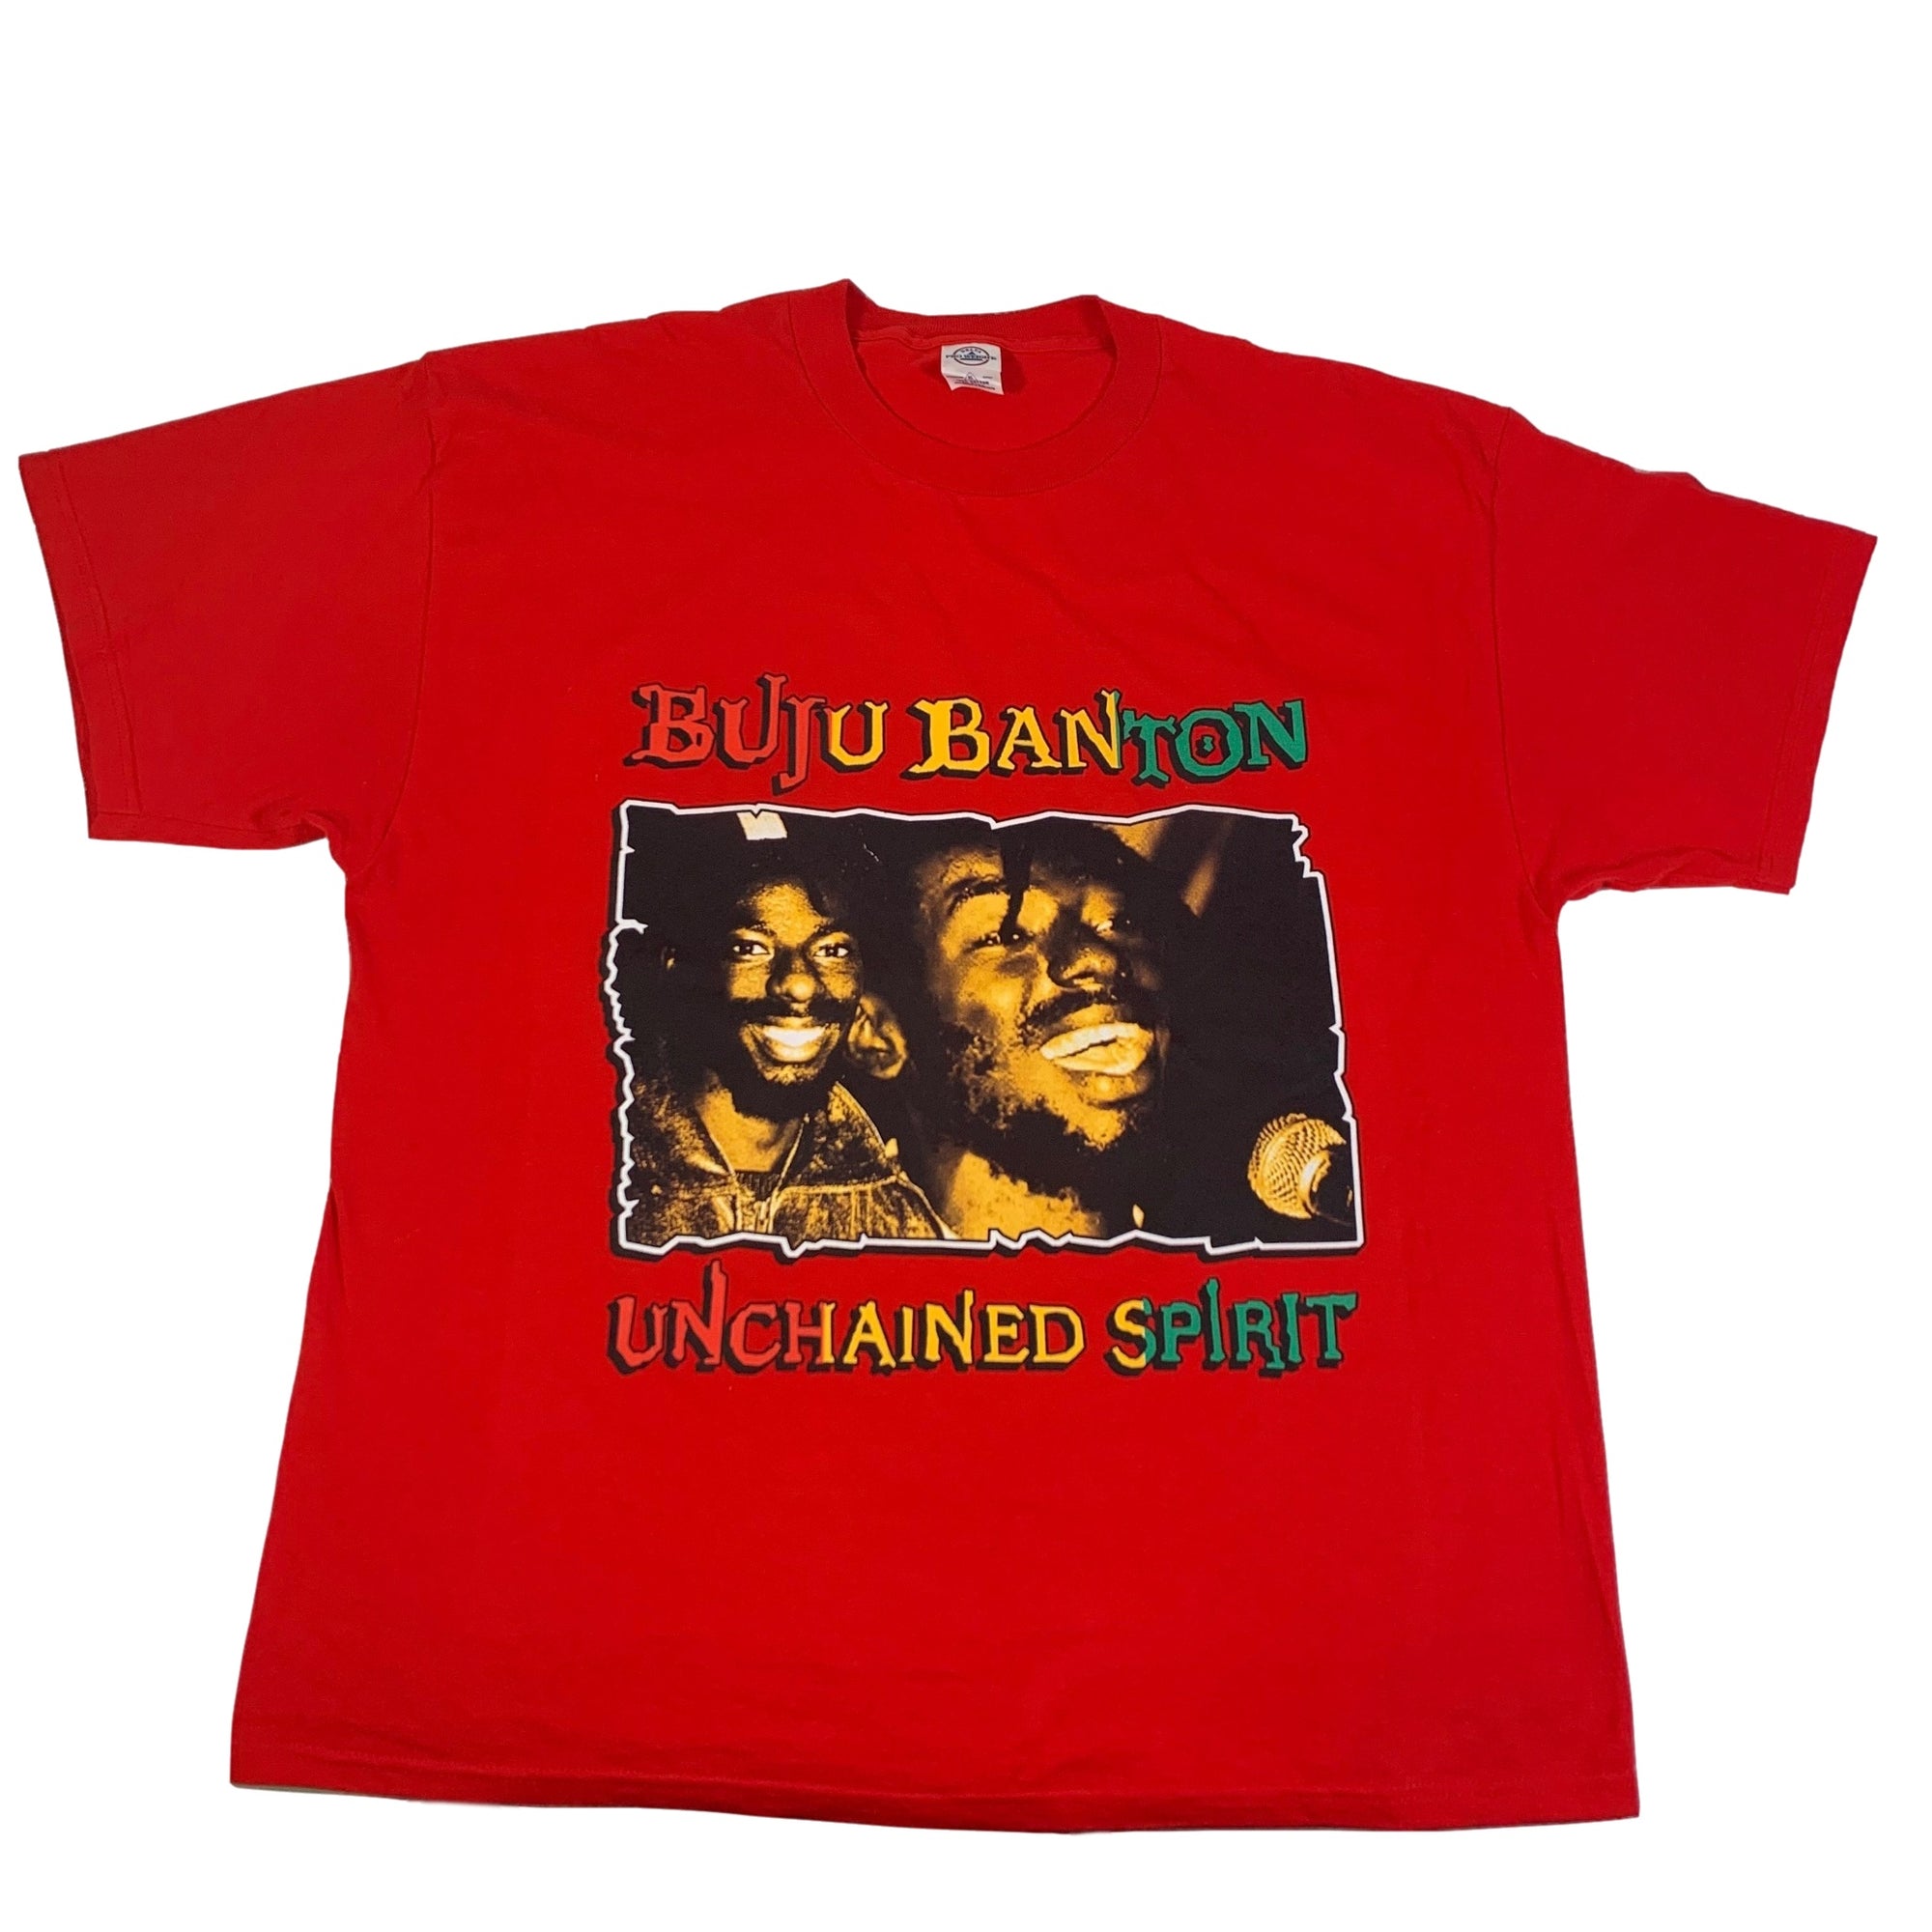 Vintage Buju Banton "Unchained Spirit" T-Shirt - jointcustodydc